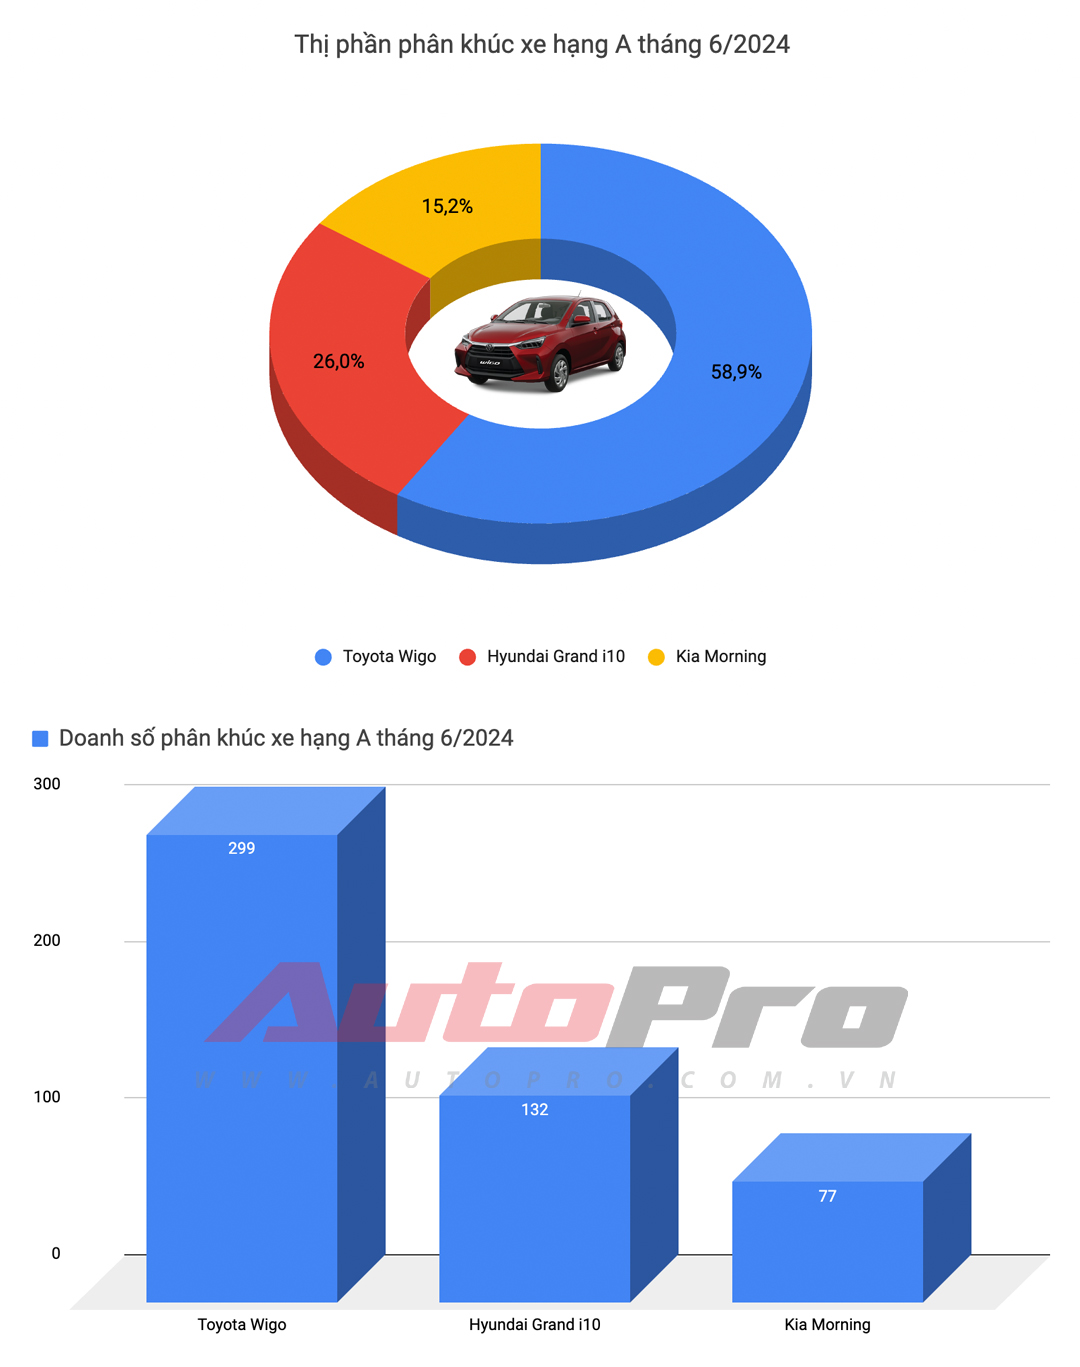 Mazda CX-5 bứt tốc, Xpander lần đầu đứng thứ 3 và những điều đáng chú ý của top 10 xe bán chạy tháng 6/2024- Ảnh 2.